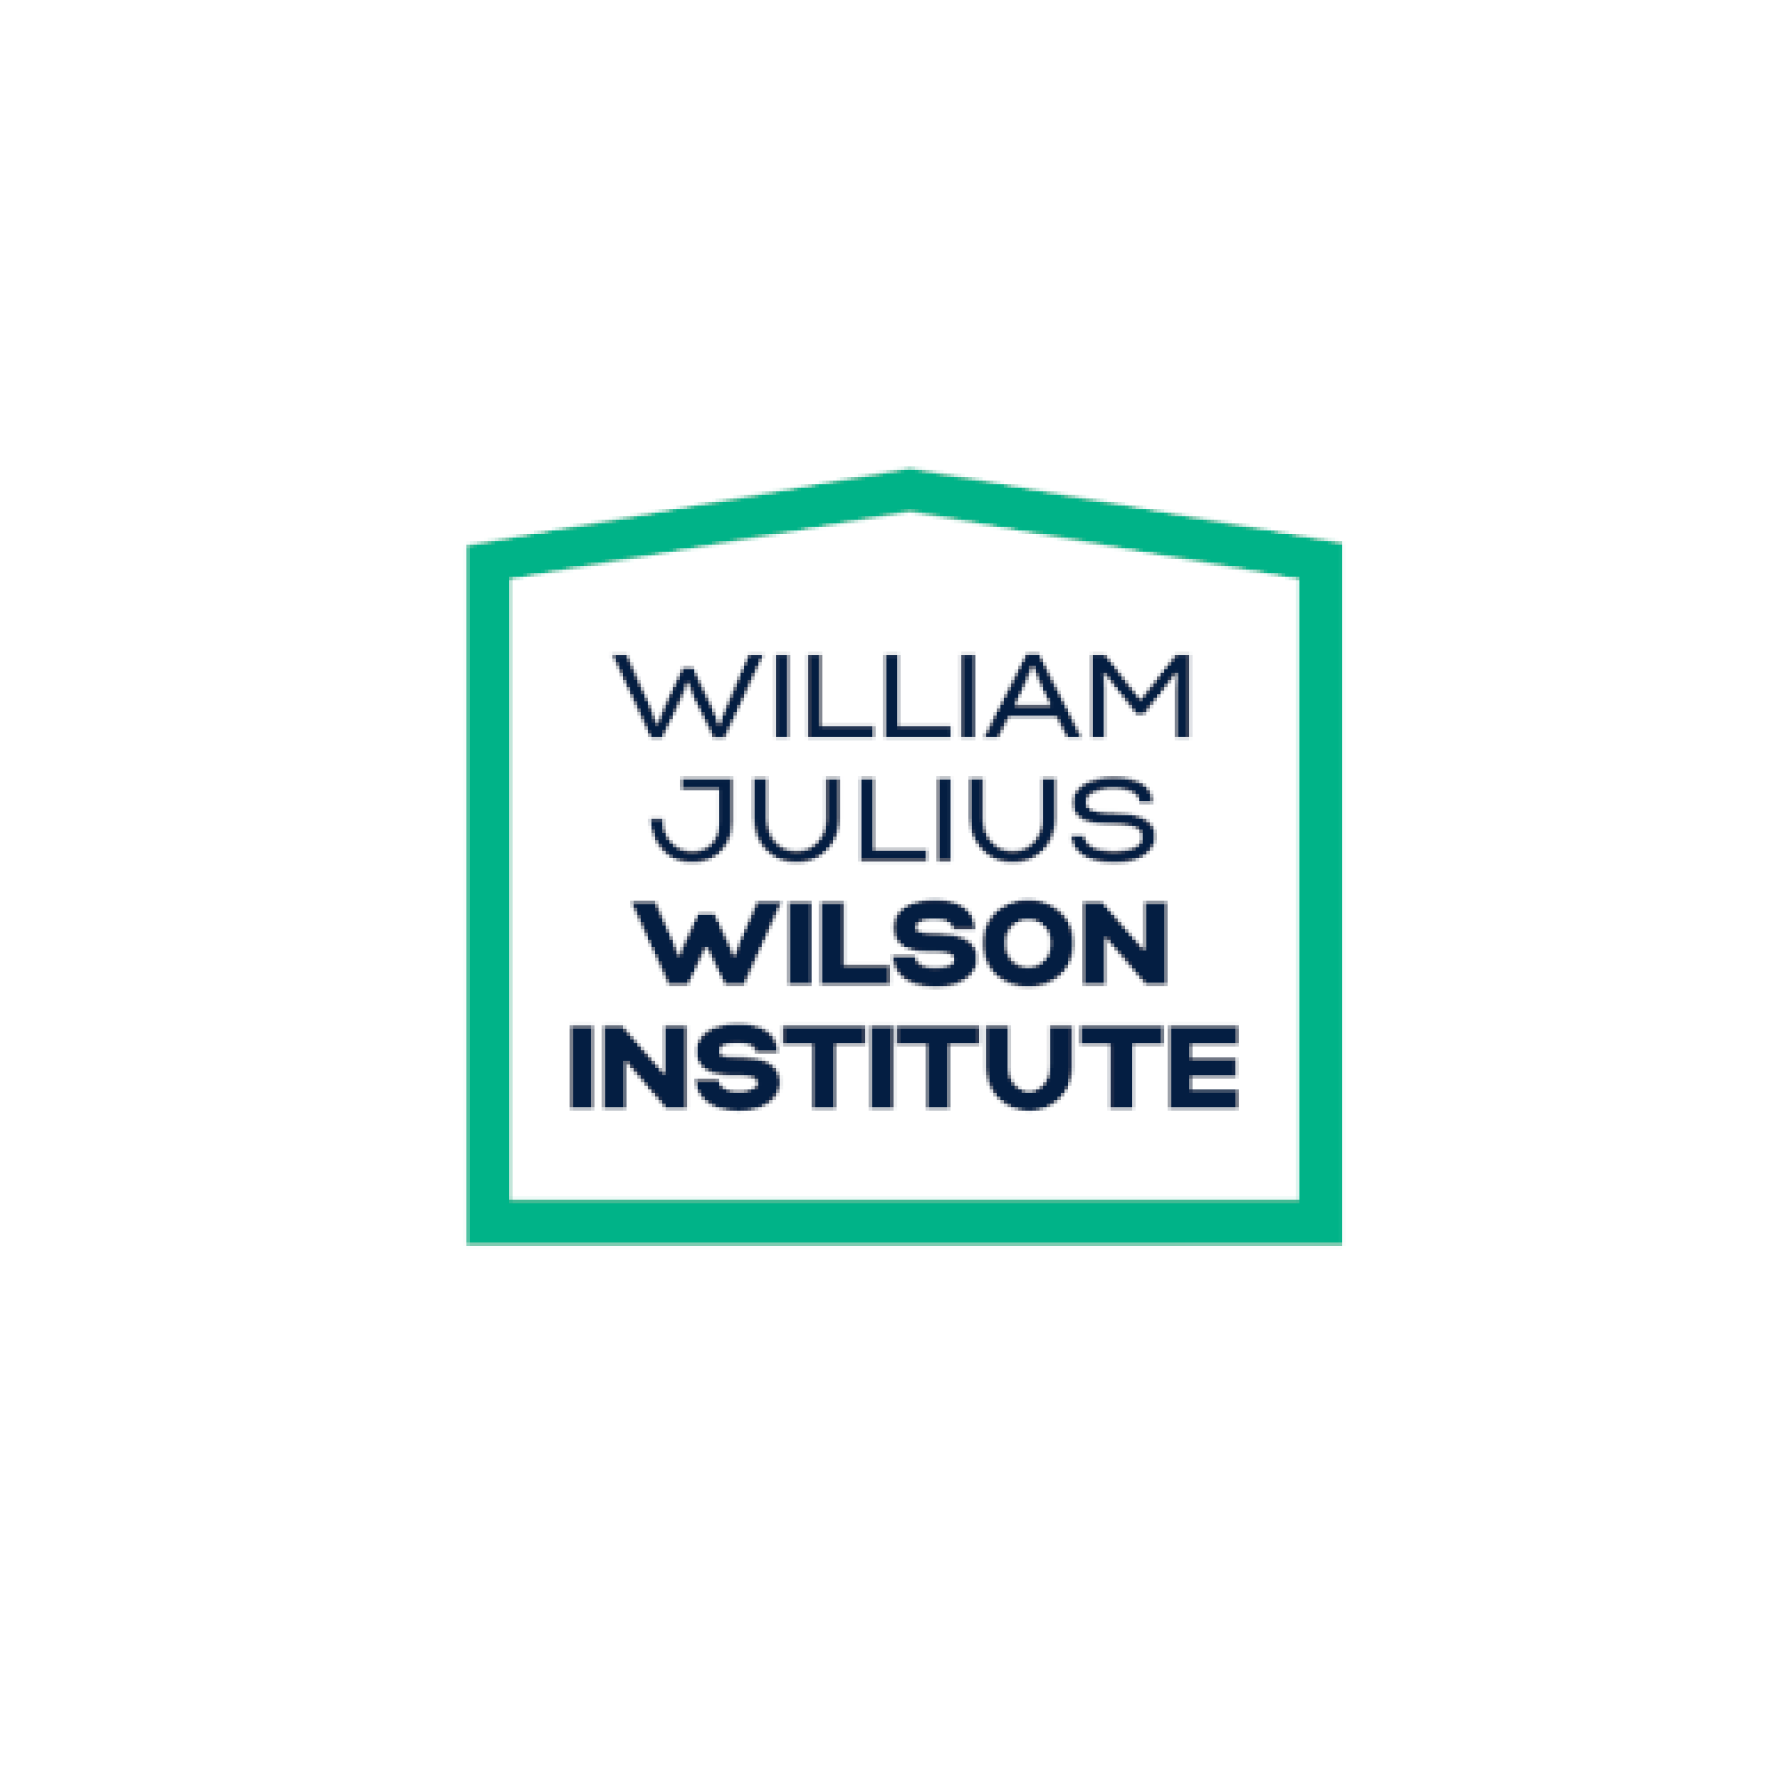 William Julius Wilson Institute Logo